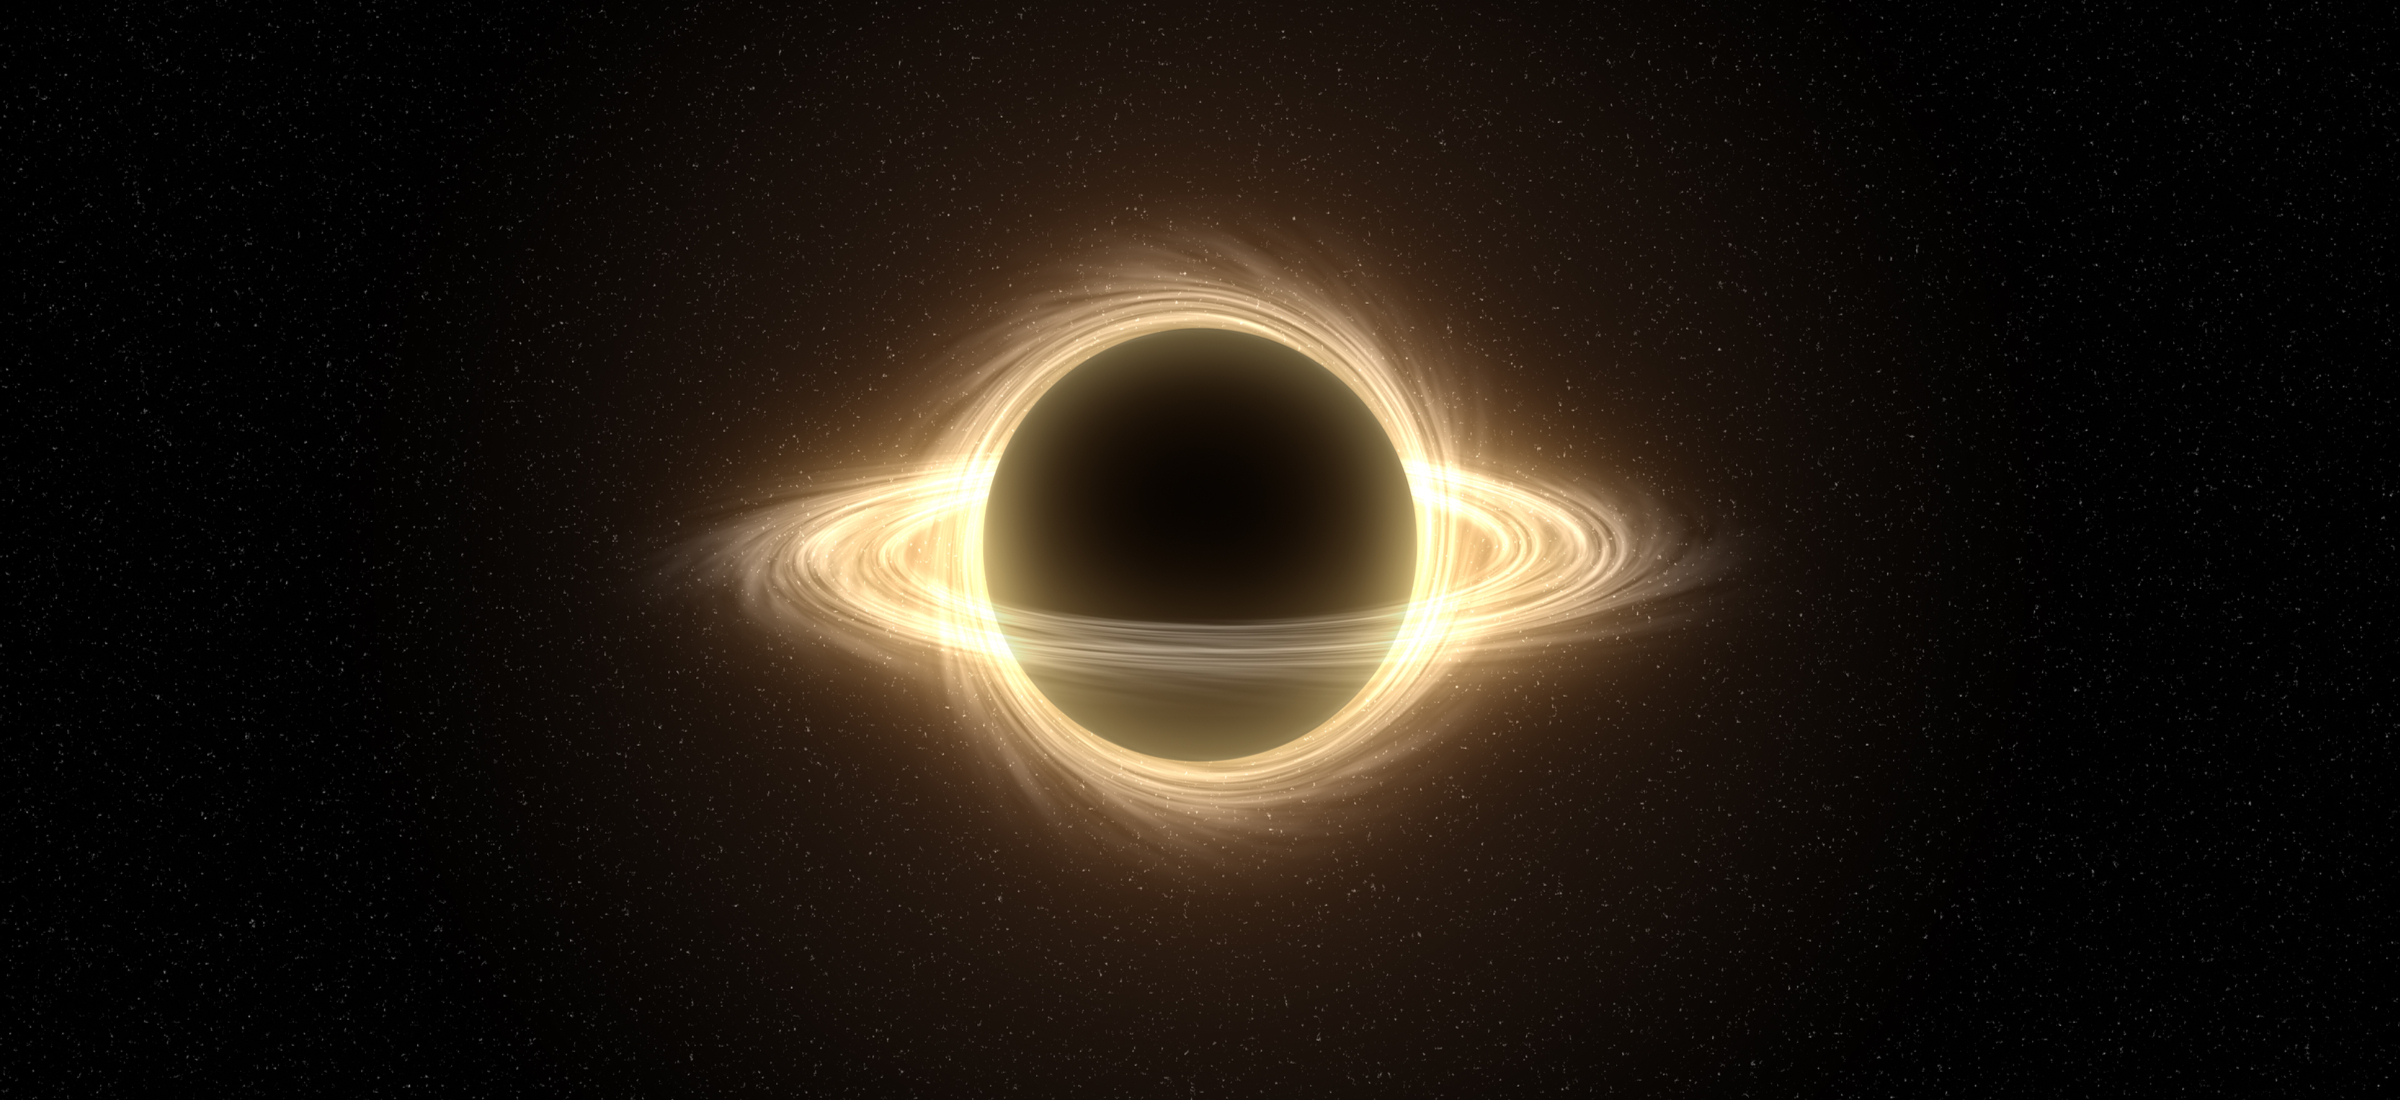 najcięższa gwiazdowa czarna dziura odkryta do tej pory w Drodze Mlecznej